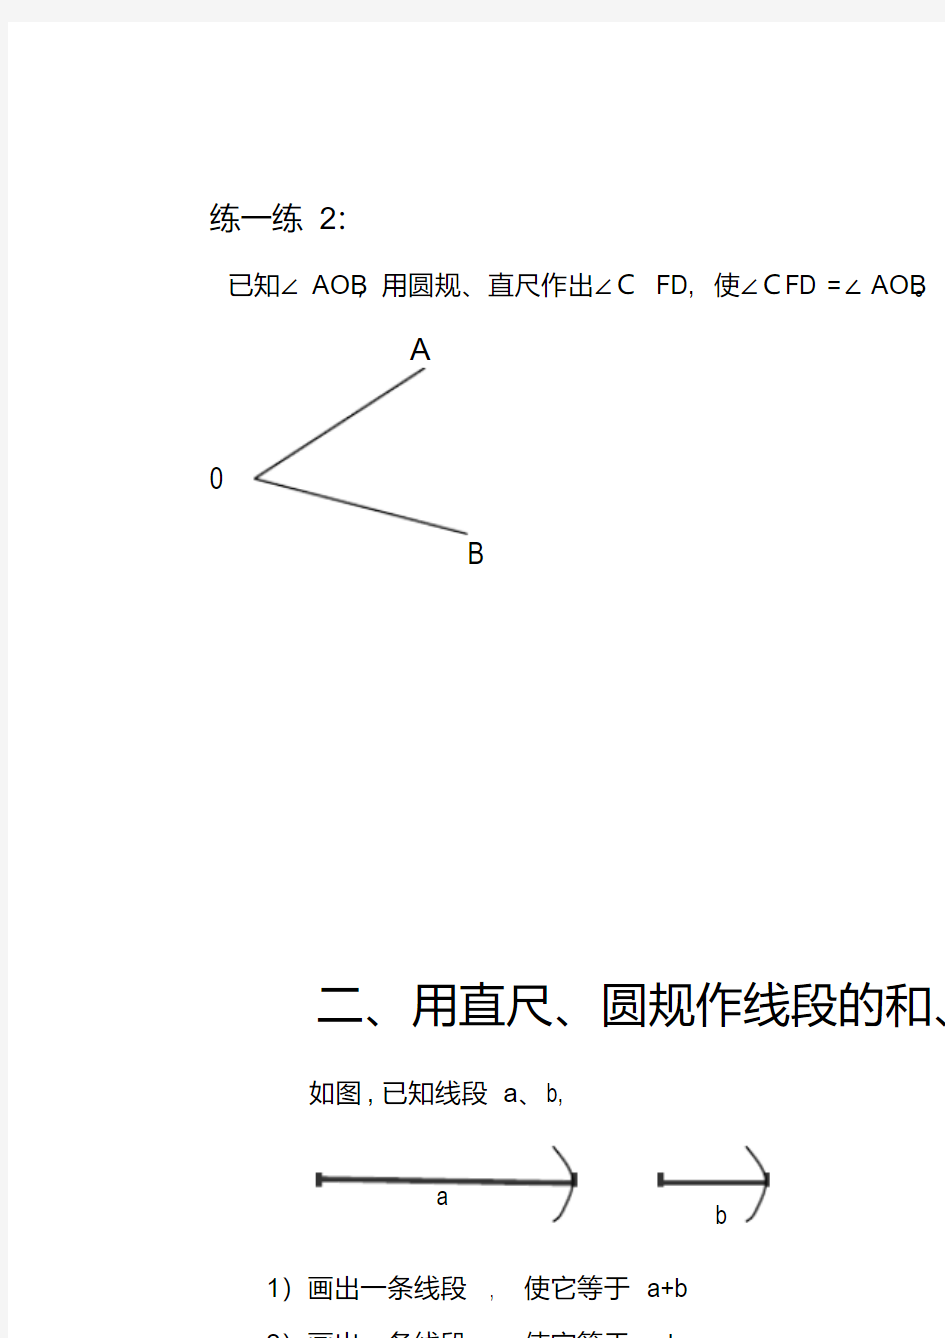 上海版六年级第二学期线段与角和差倍分作图题